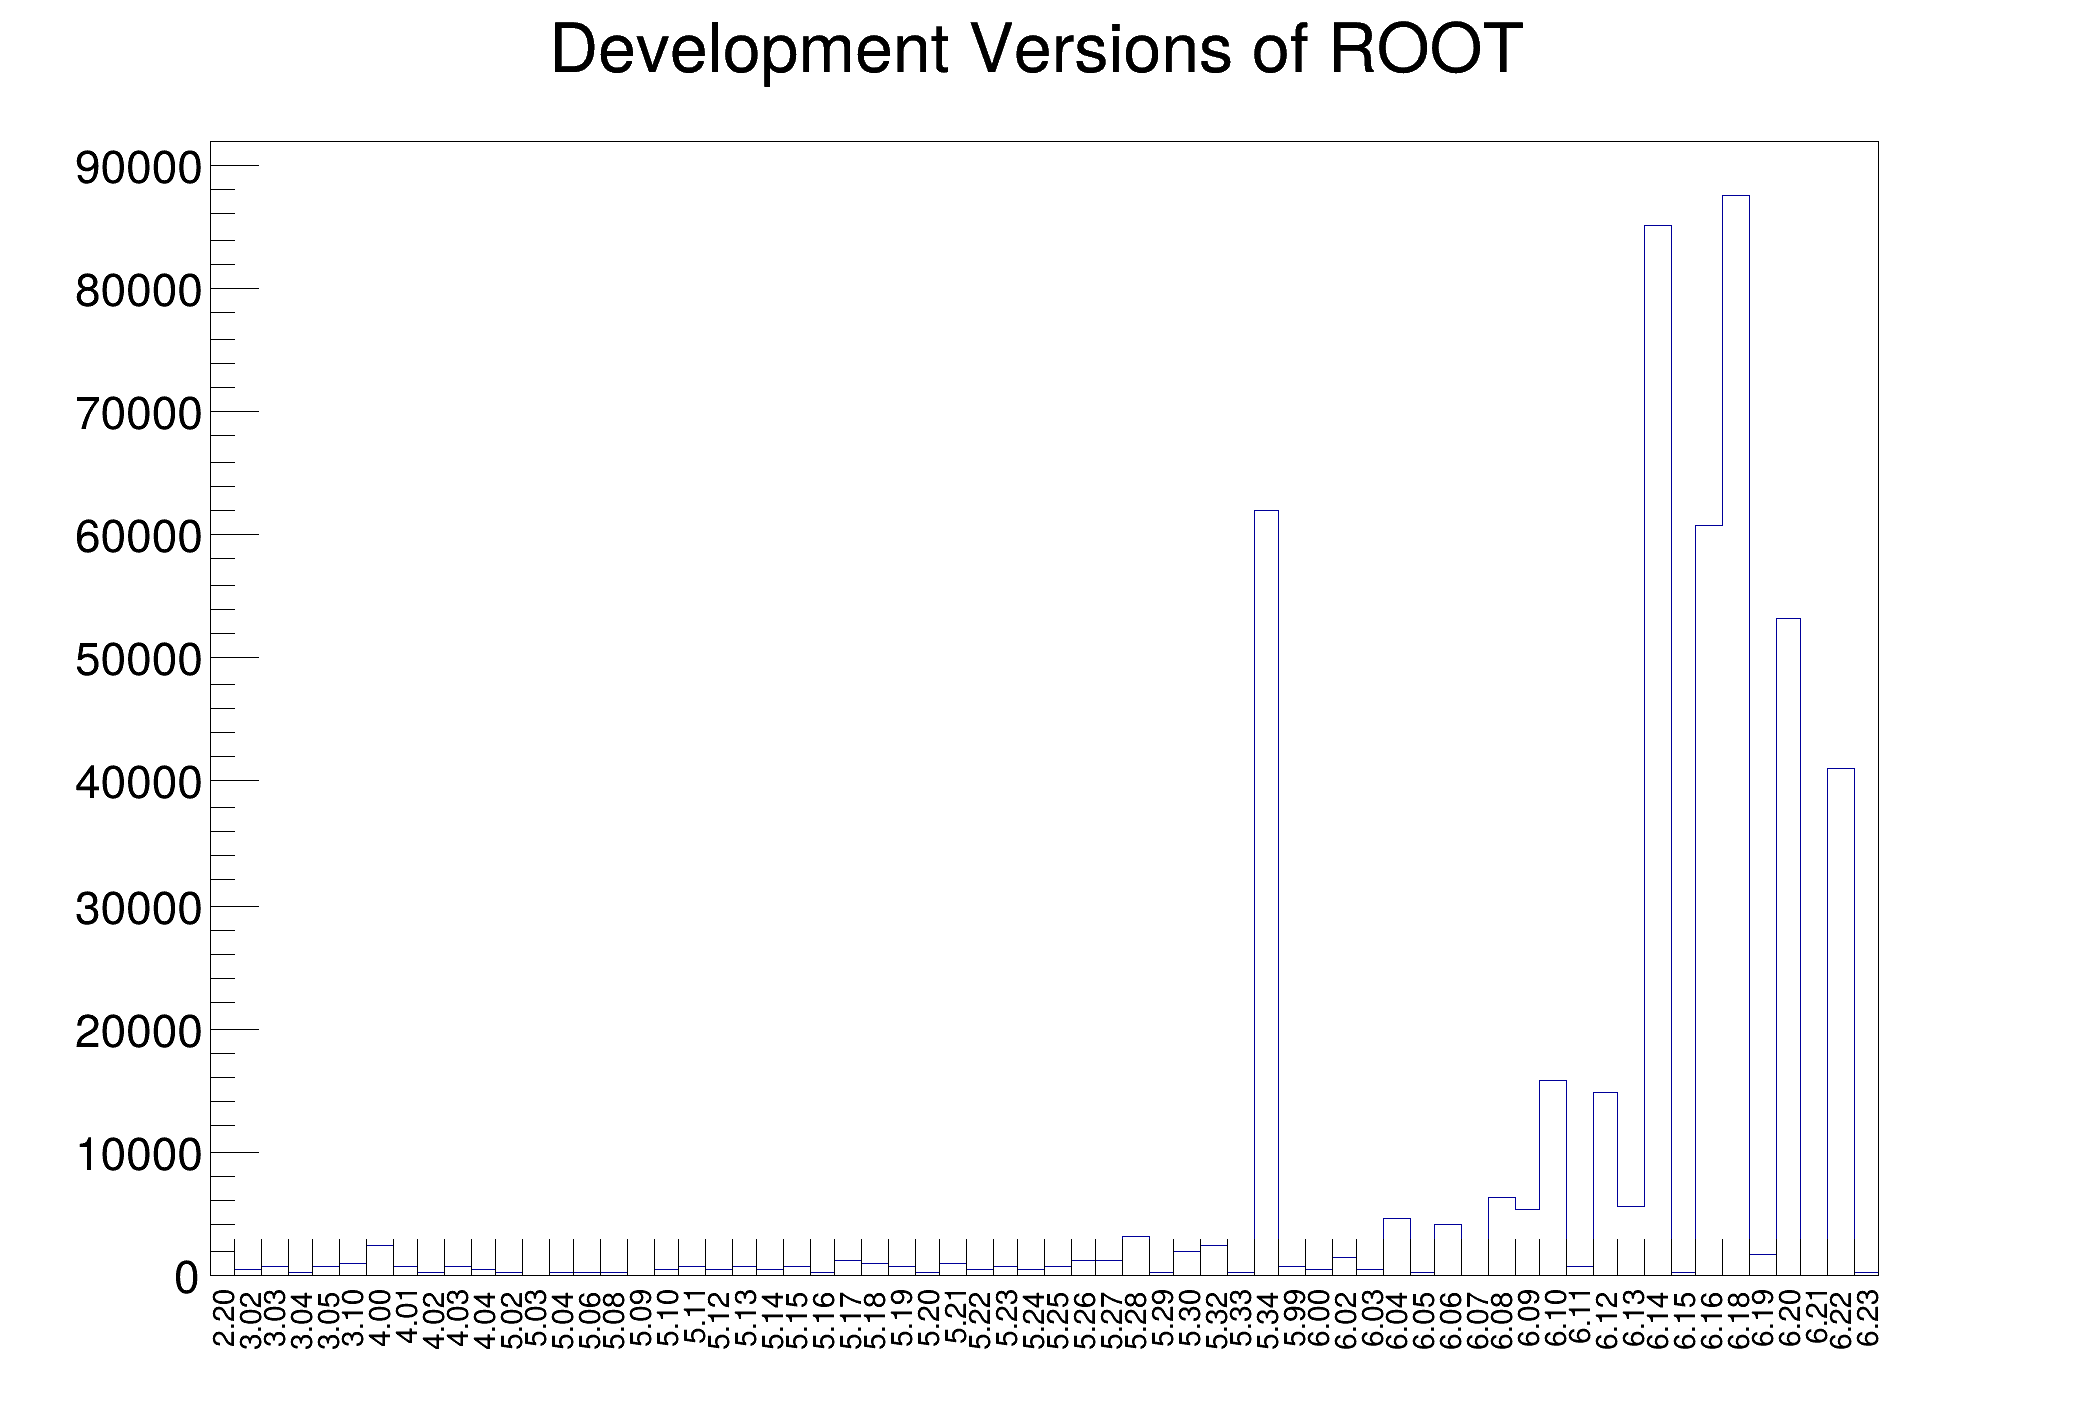 Root message. Root CERN вертикальная линия на графике. Root CERN write text on Page.